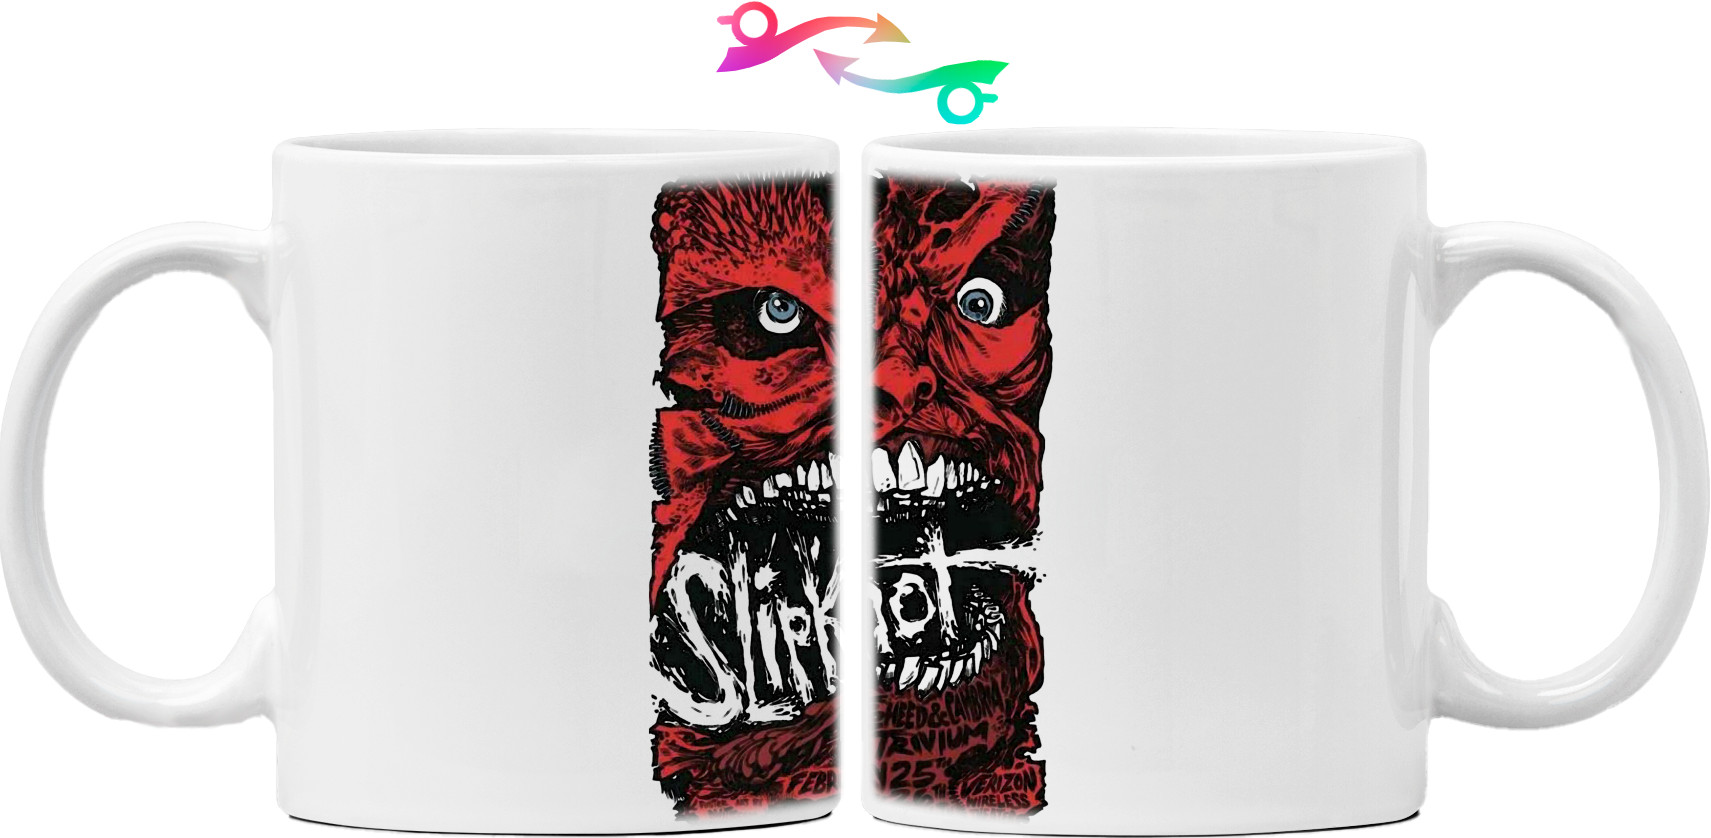 Slipknot - Mug - Slipknot 8 - Mfest